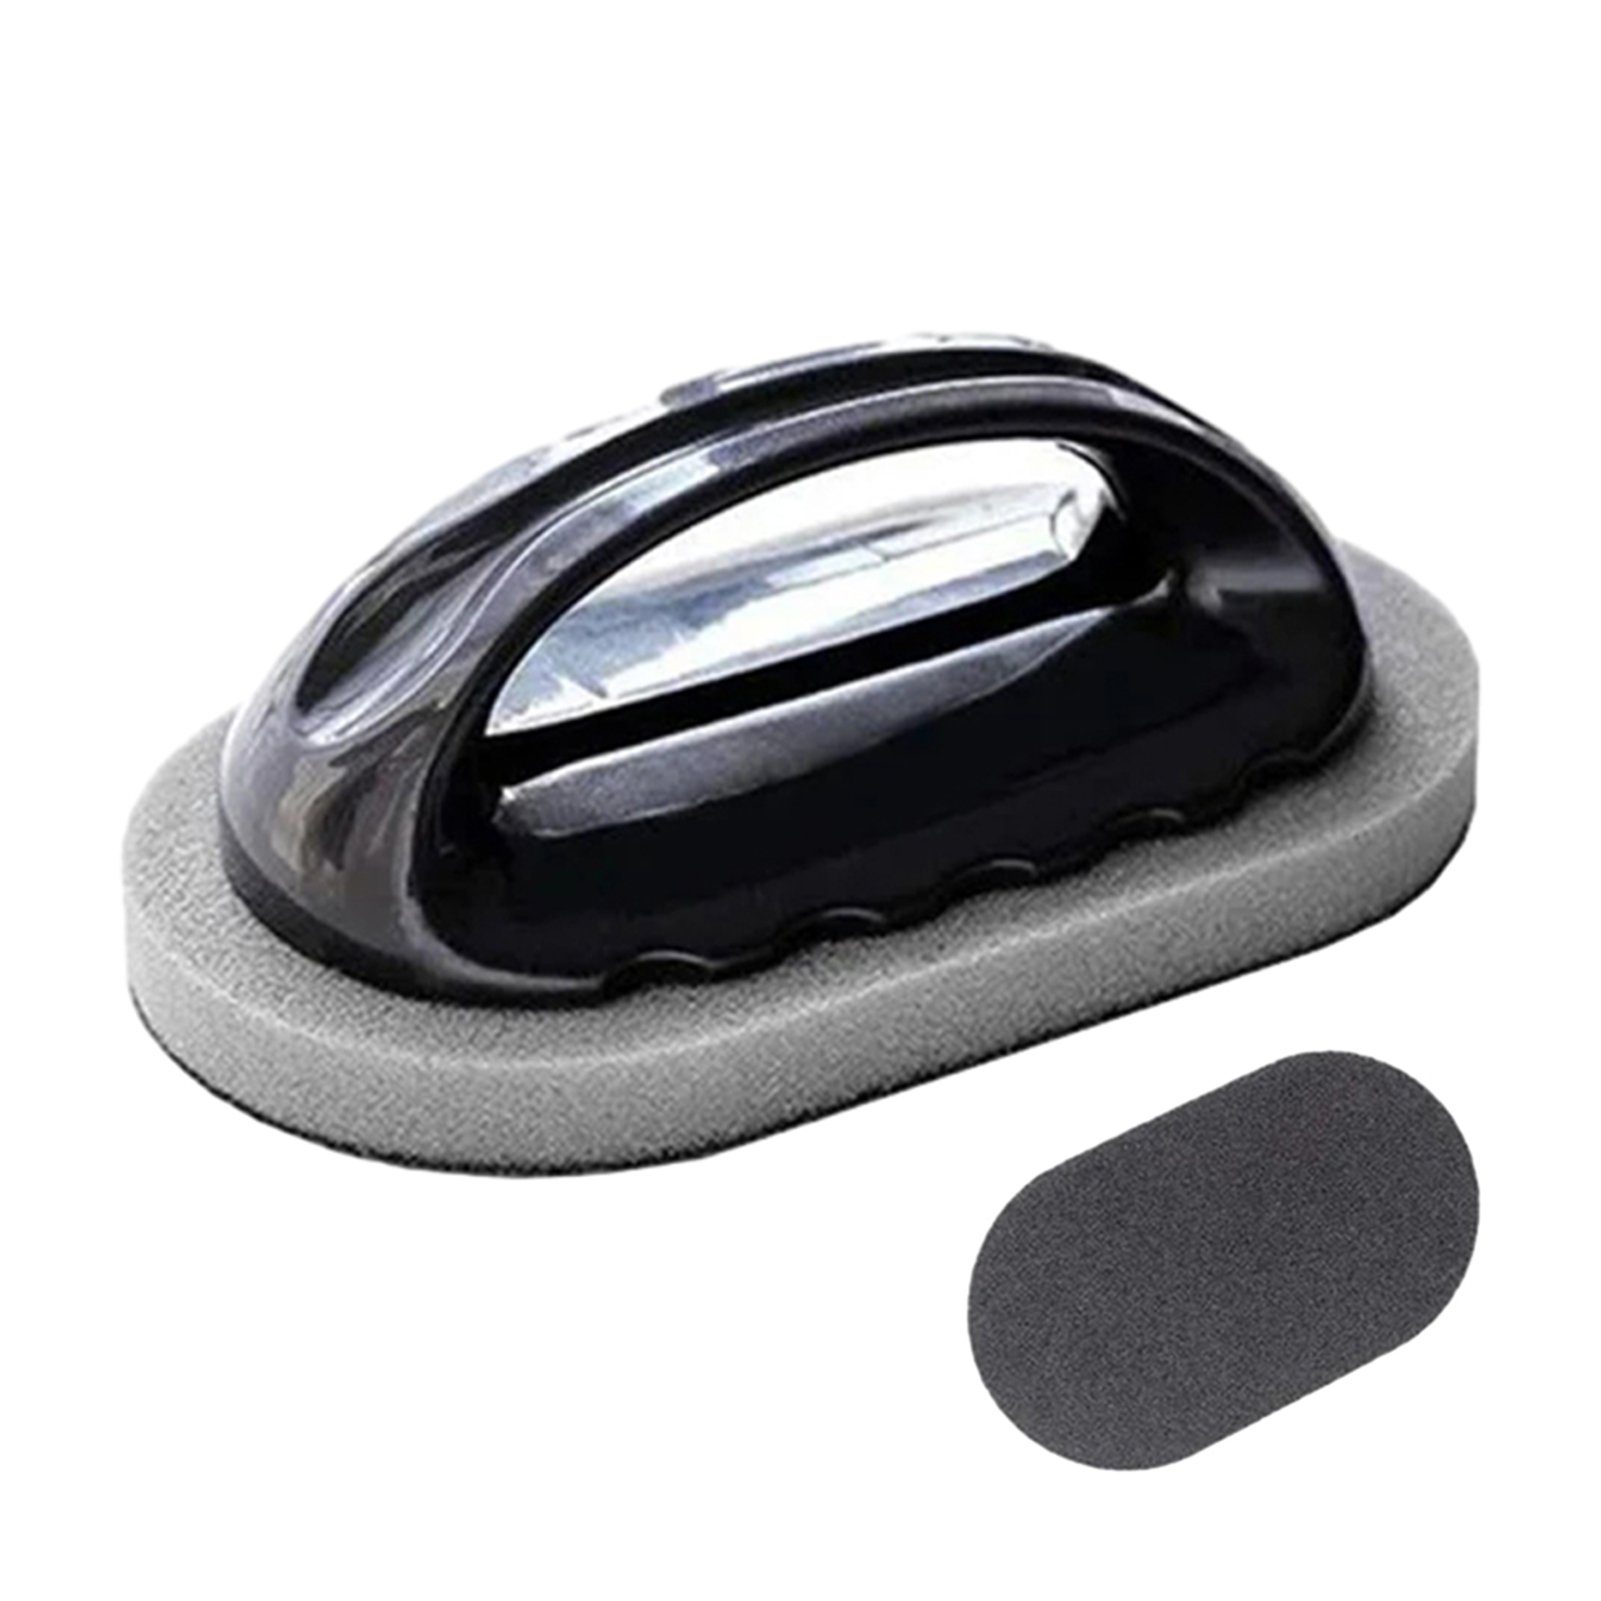 Nano-Keramik-Magic-Schwammbürste Blusmart black Mit Verschleißfestes Reinigungsbürste Griff,